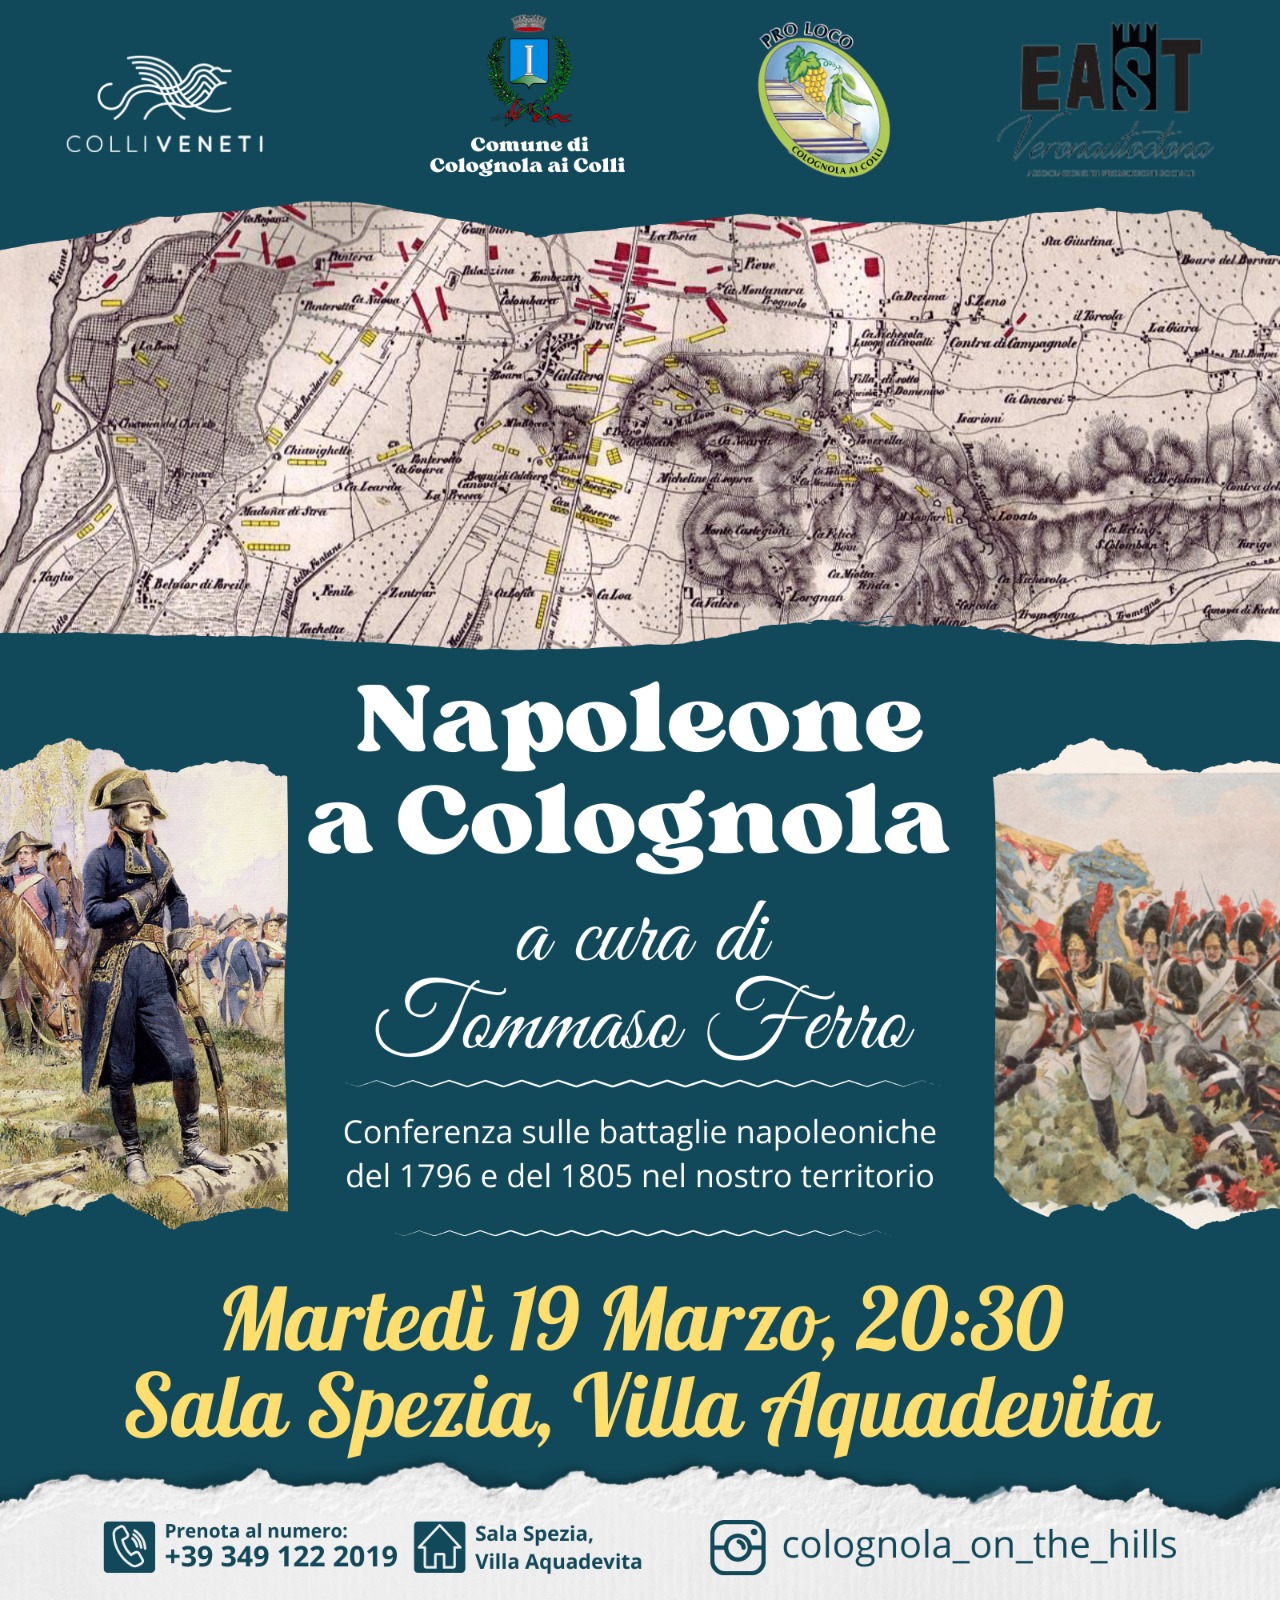 Napoleone a Colognola